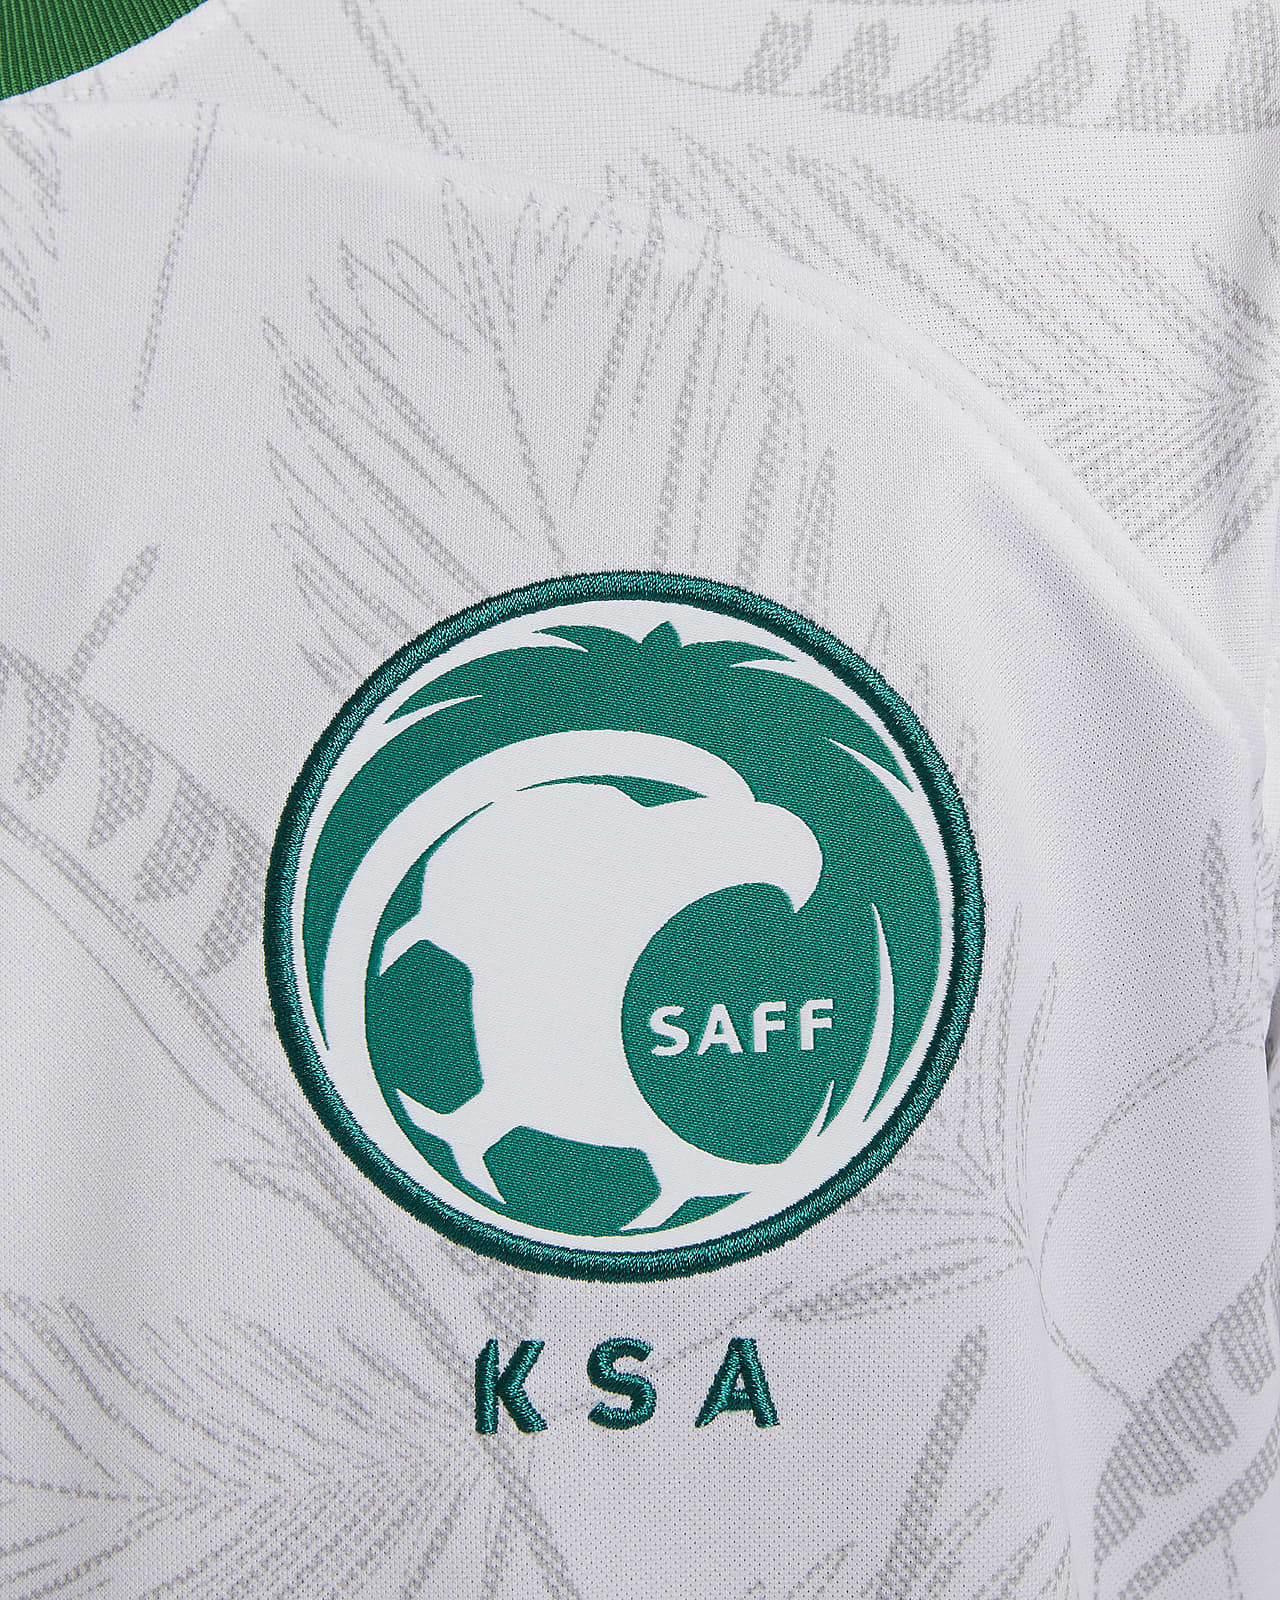 The best Saudi league jerseys